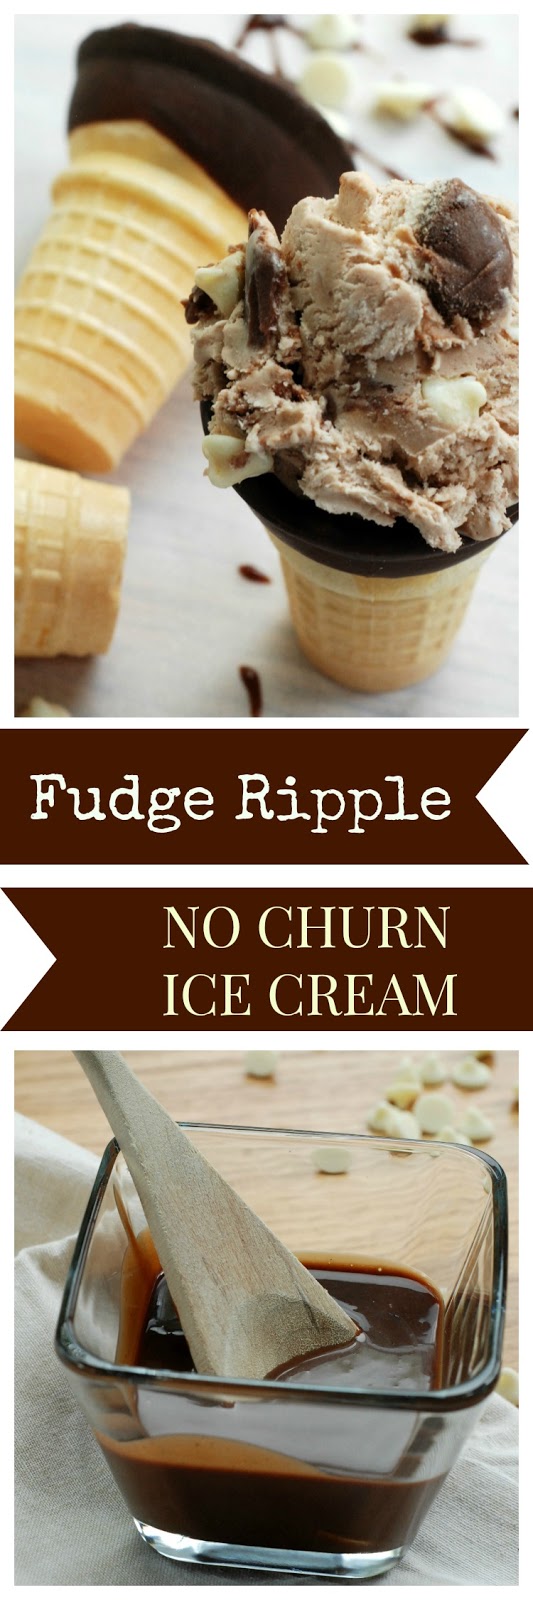 fudge ripple white chocolate no churn ice cream